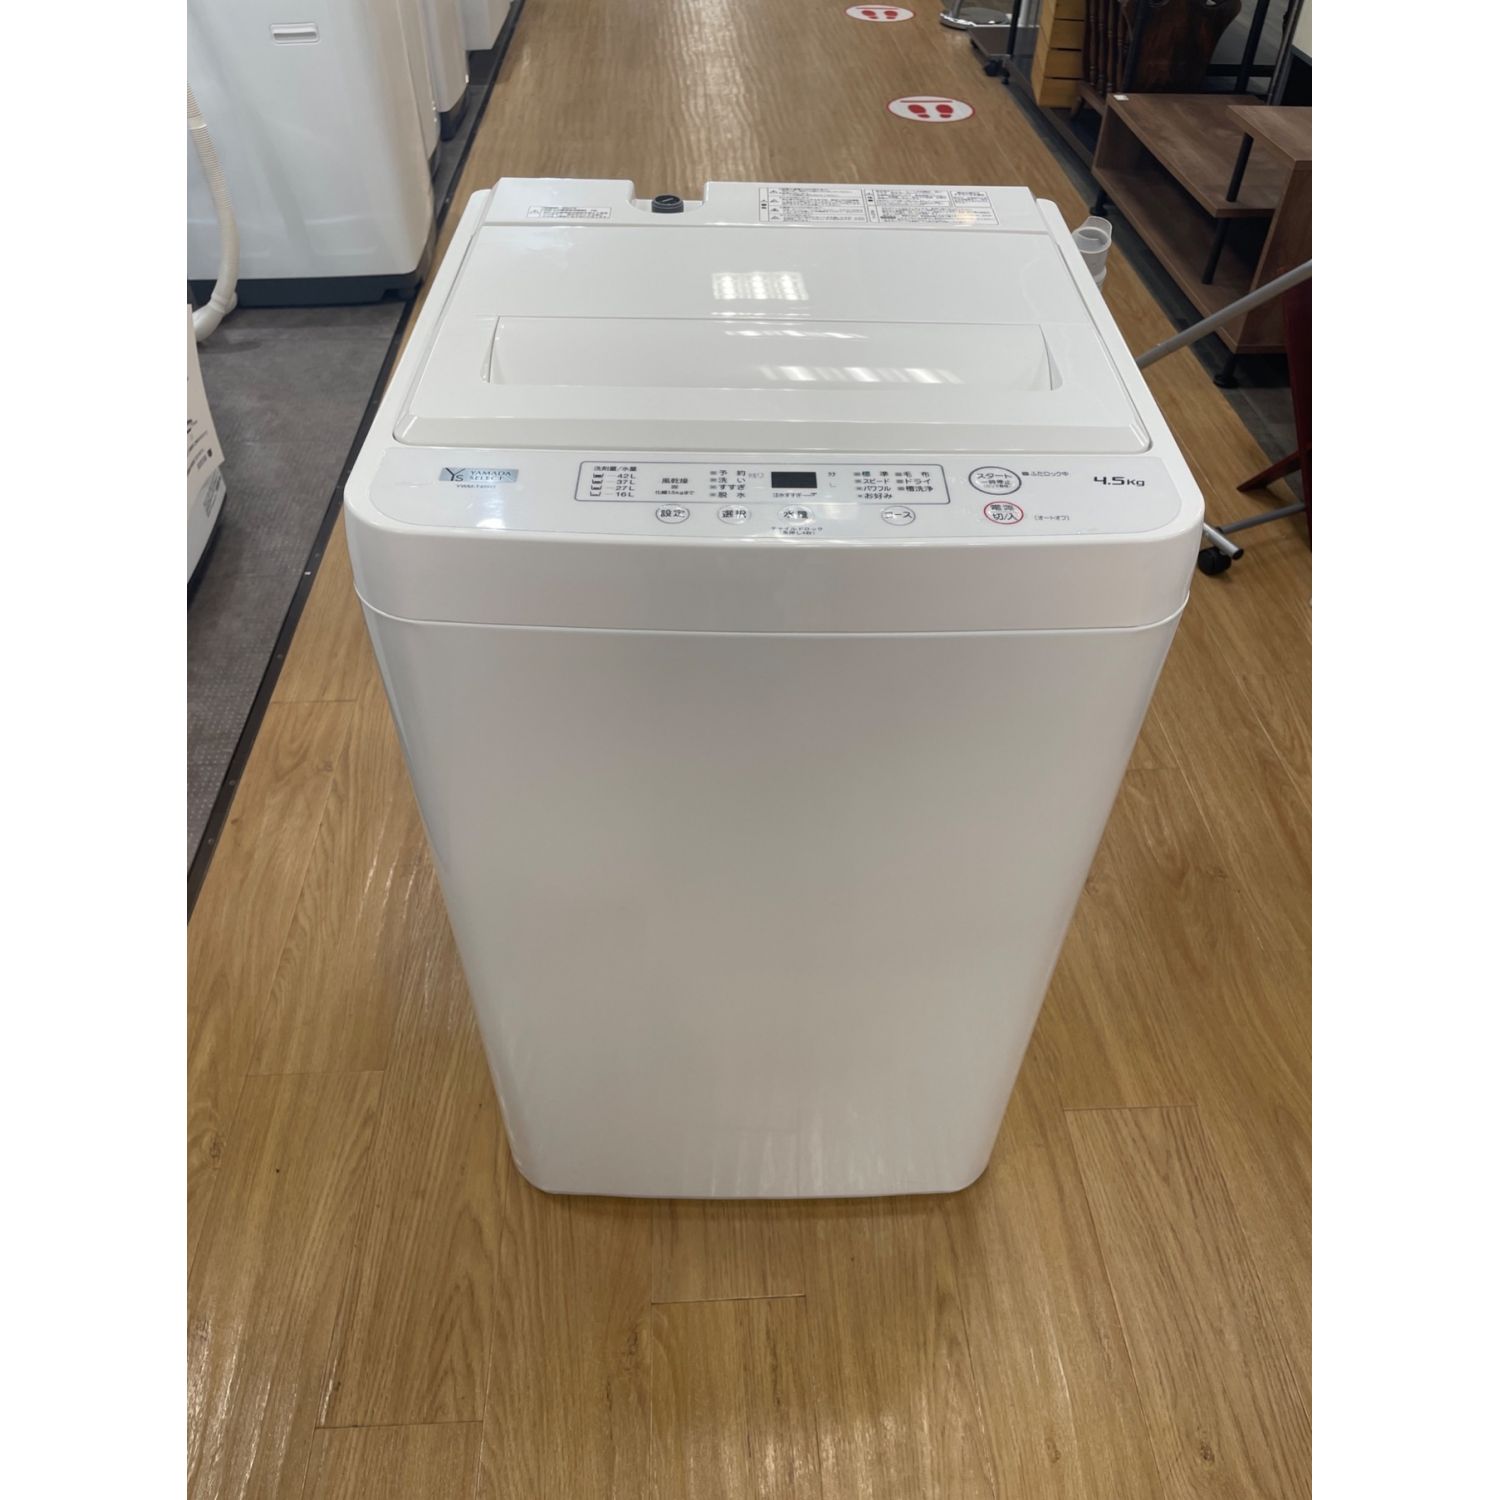 1/15東区和白 YAMADA 4.5㎏洗濯機 2019年製 YWM-T45G1 高年式‼︎ 激安 